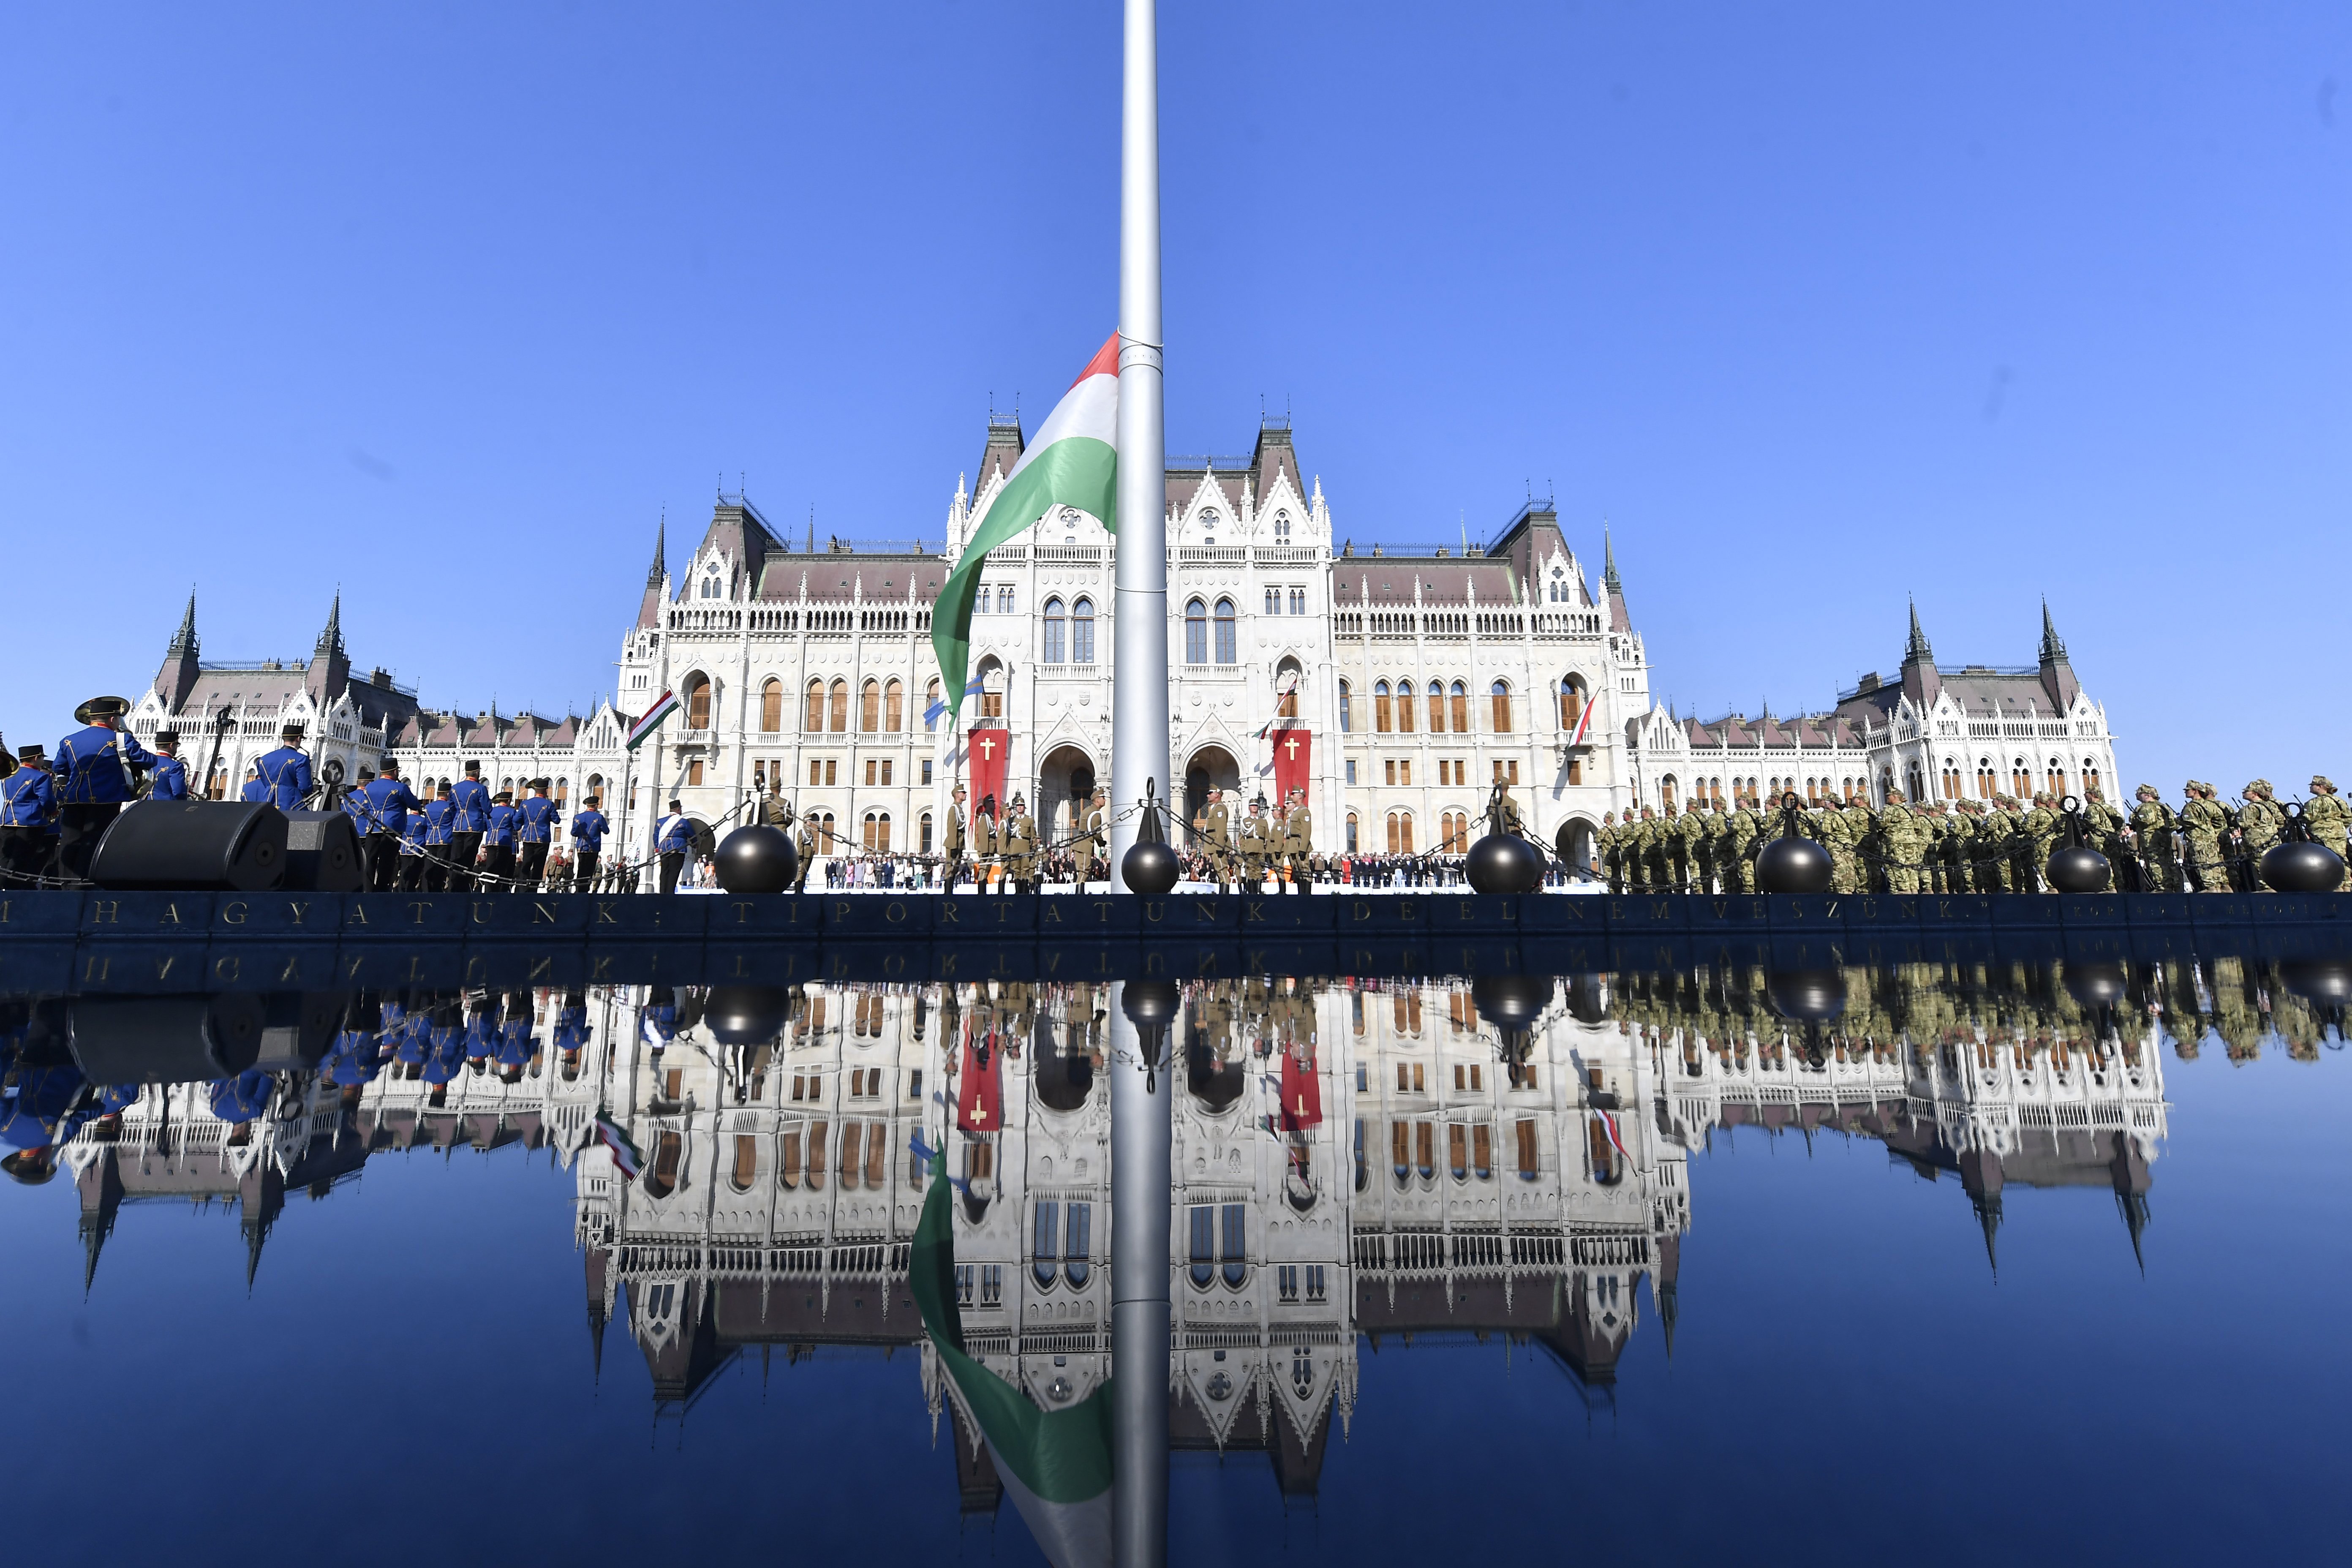 Ünnepélyes zászlófelvonás 2018. augusztus 20-án reggel a Kossuth téren.